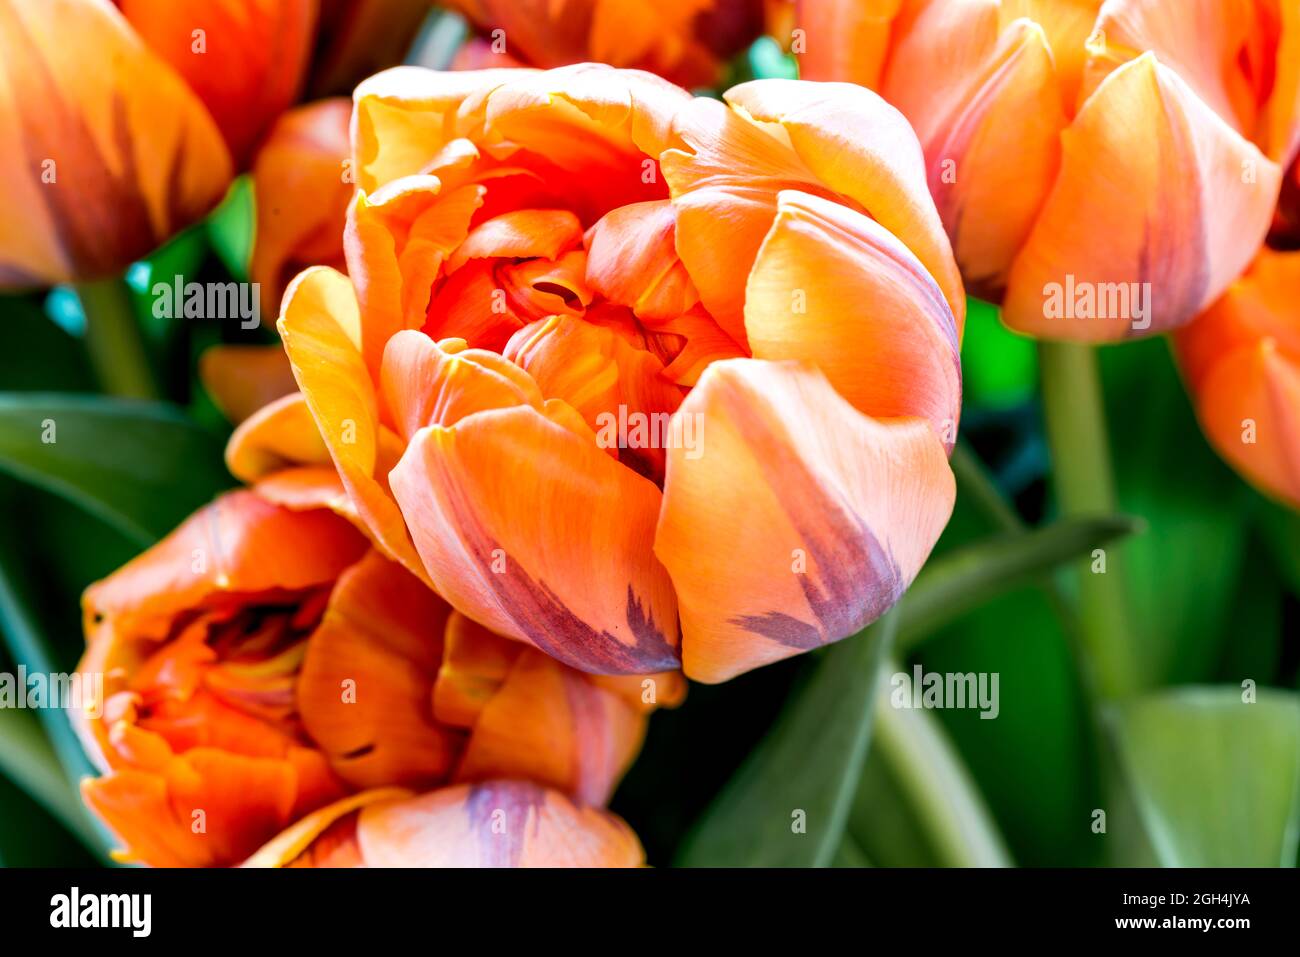 Mazzo di tulipani - rosso, arancio e giallo; Tulpenstrauß - marciume, arancio e gelb Foto Stock